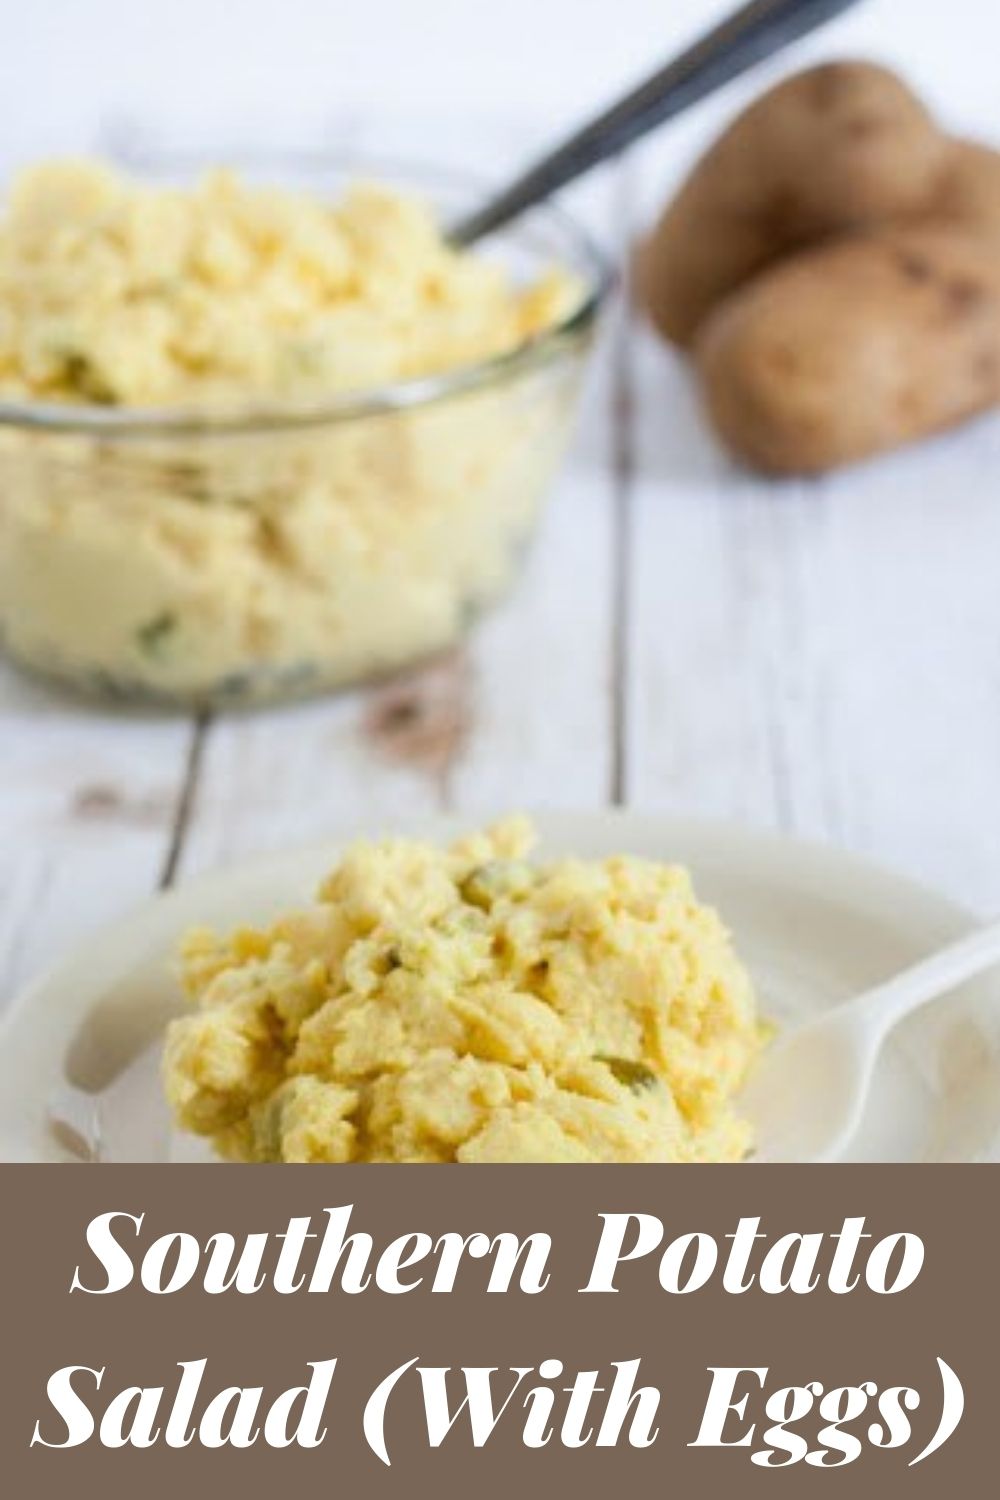 Grandma Pettus’ Southern Potato Salad Recipe (Without Too Much Mayo)